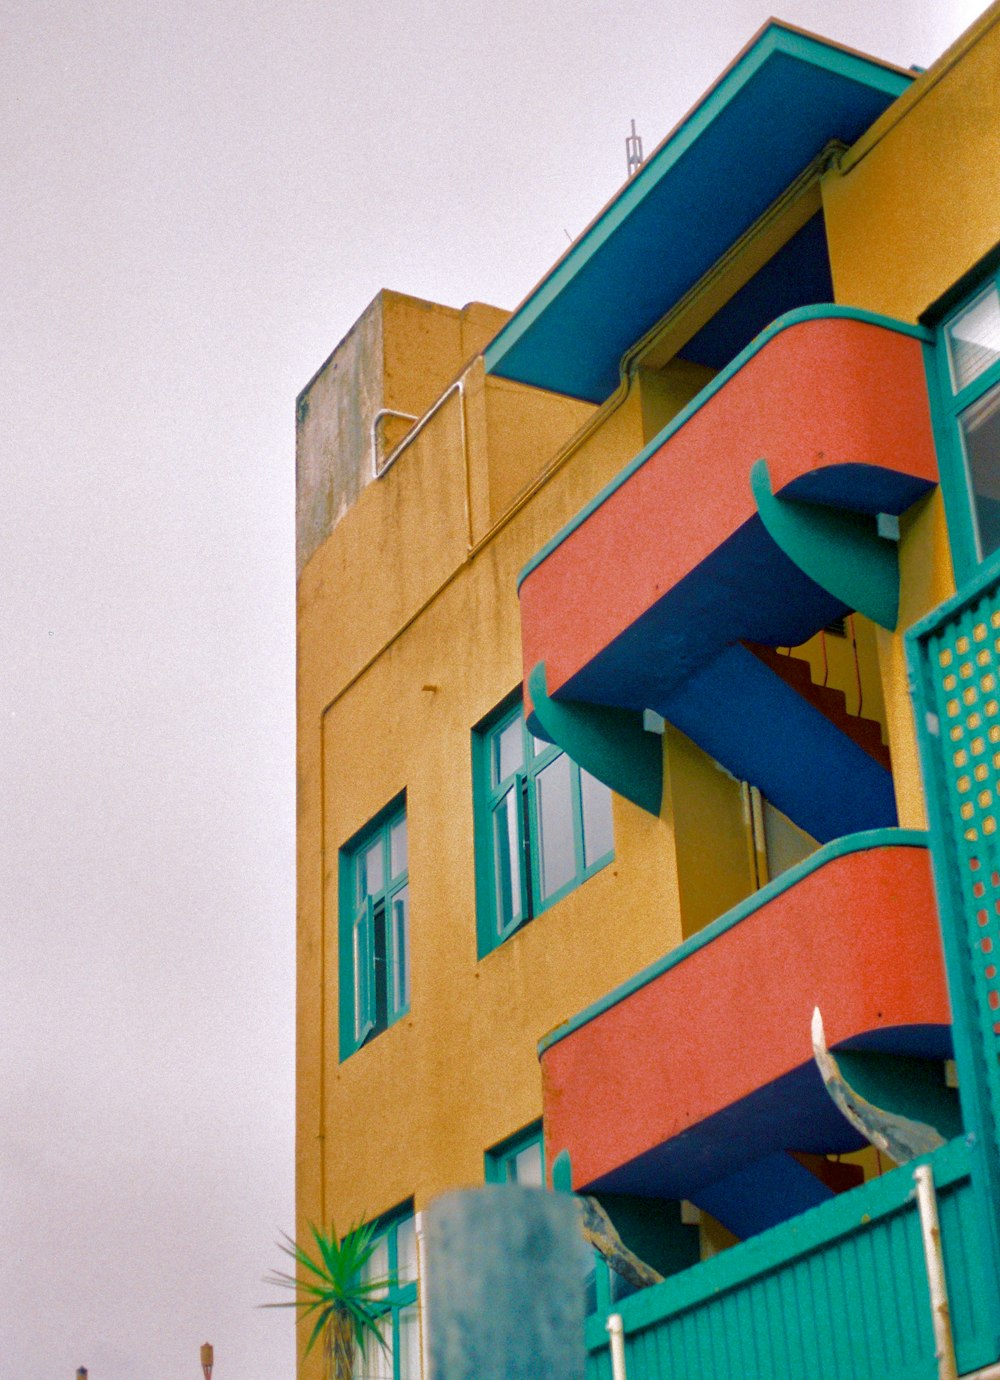 Edifício de 4 andares laranja, azul e amarelo